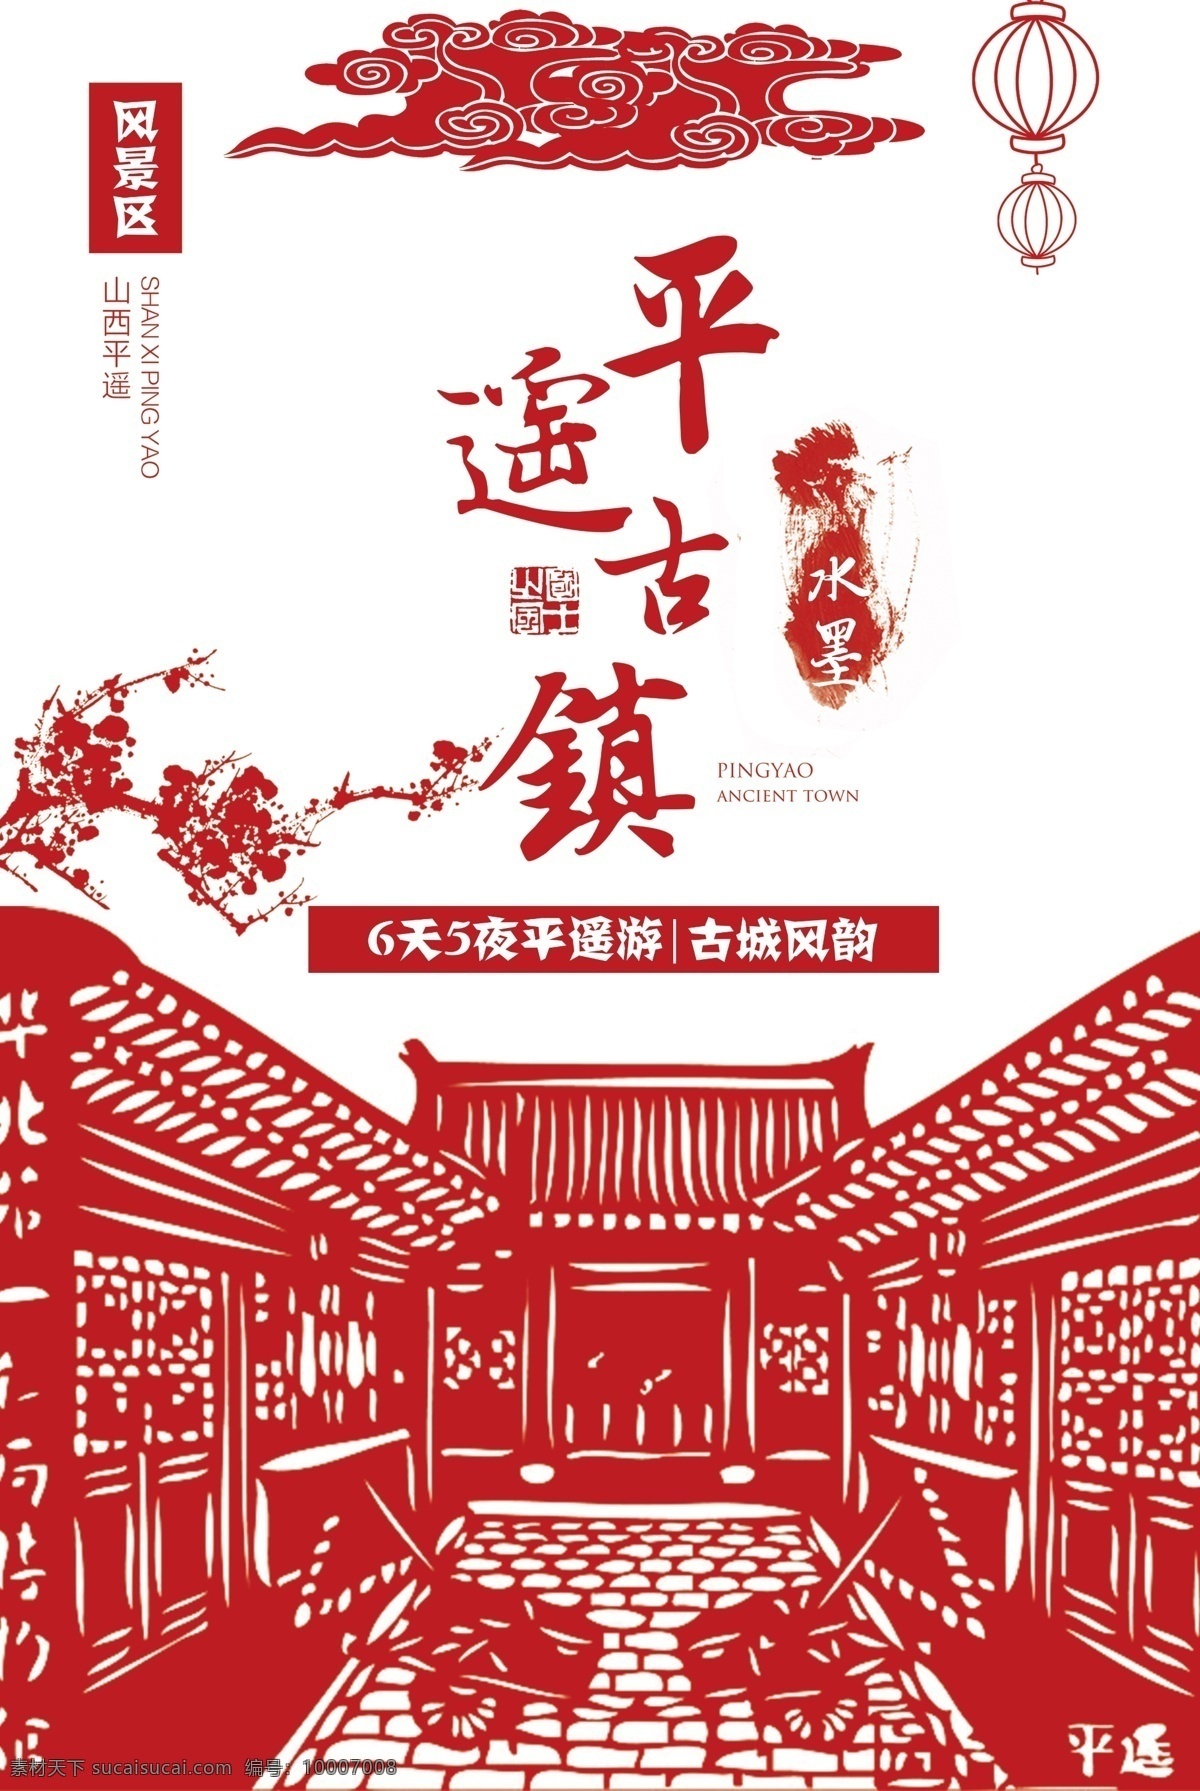 2017 红色 剪纸 风格 平遥 古镇 旅游 海报 宣传 风格设计 设计风格 剪纸设计